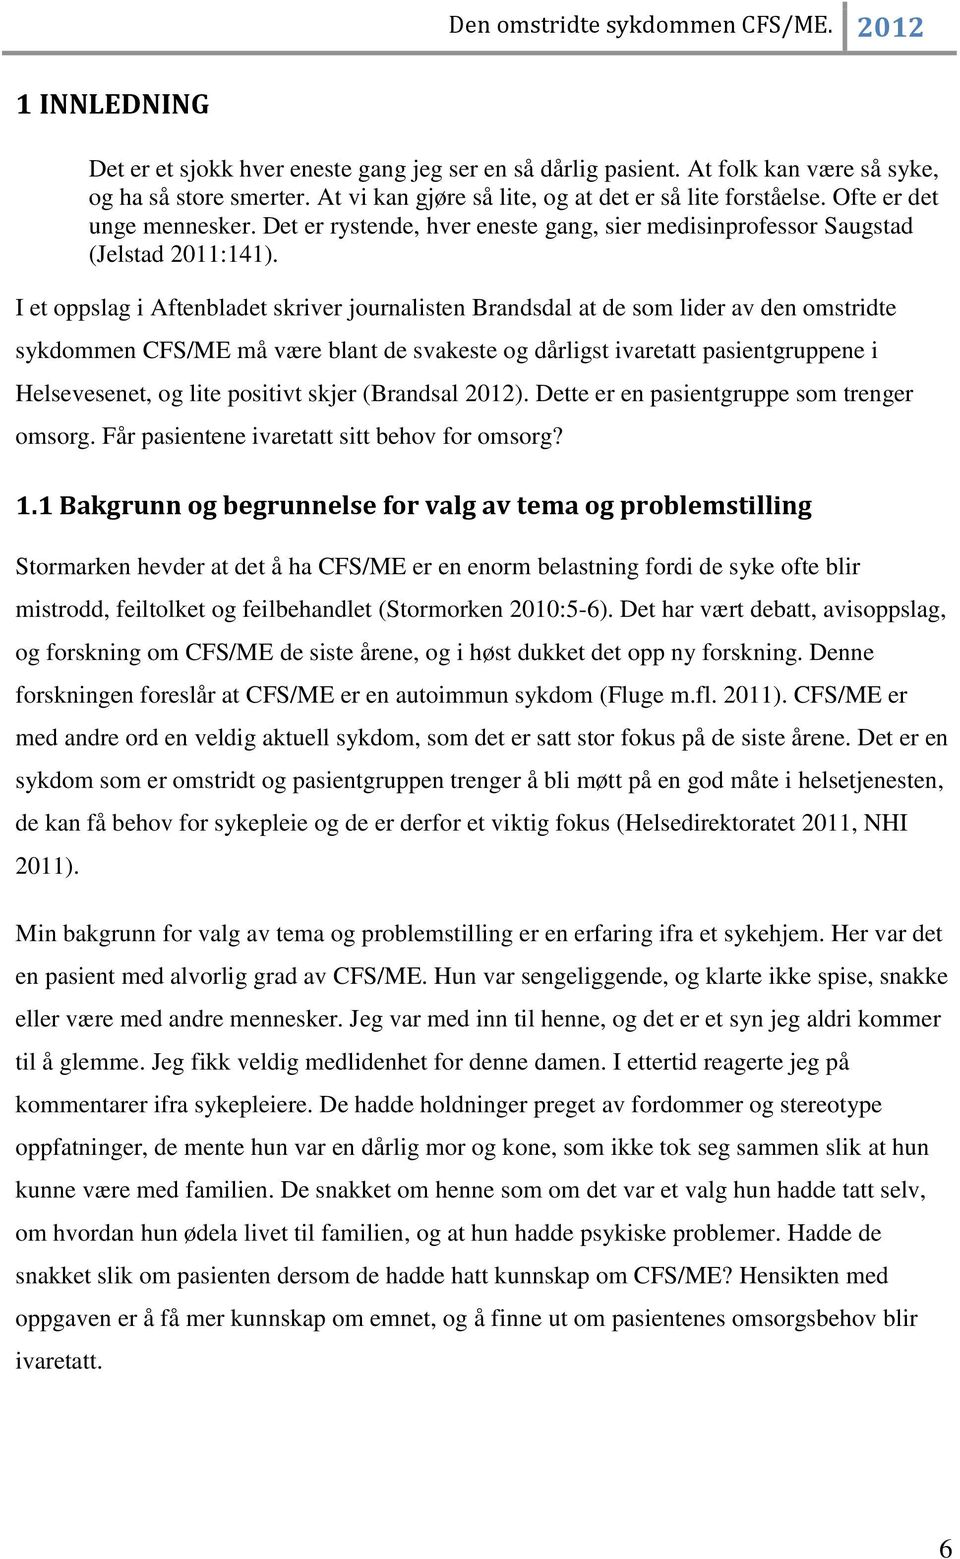 I et oppslag i Aftenbladet skriver journalisten Brandsdal at de som lider av den omstridte sykdommen CFS/ME må være blant de svakeste og dårligst ivaretatt pasientgruppene i Helsevesenet, og lite